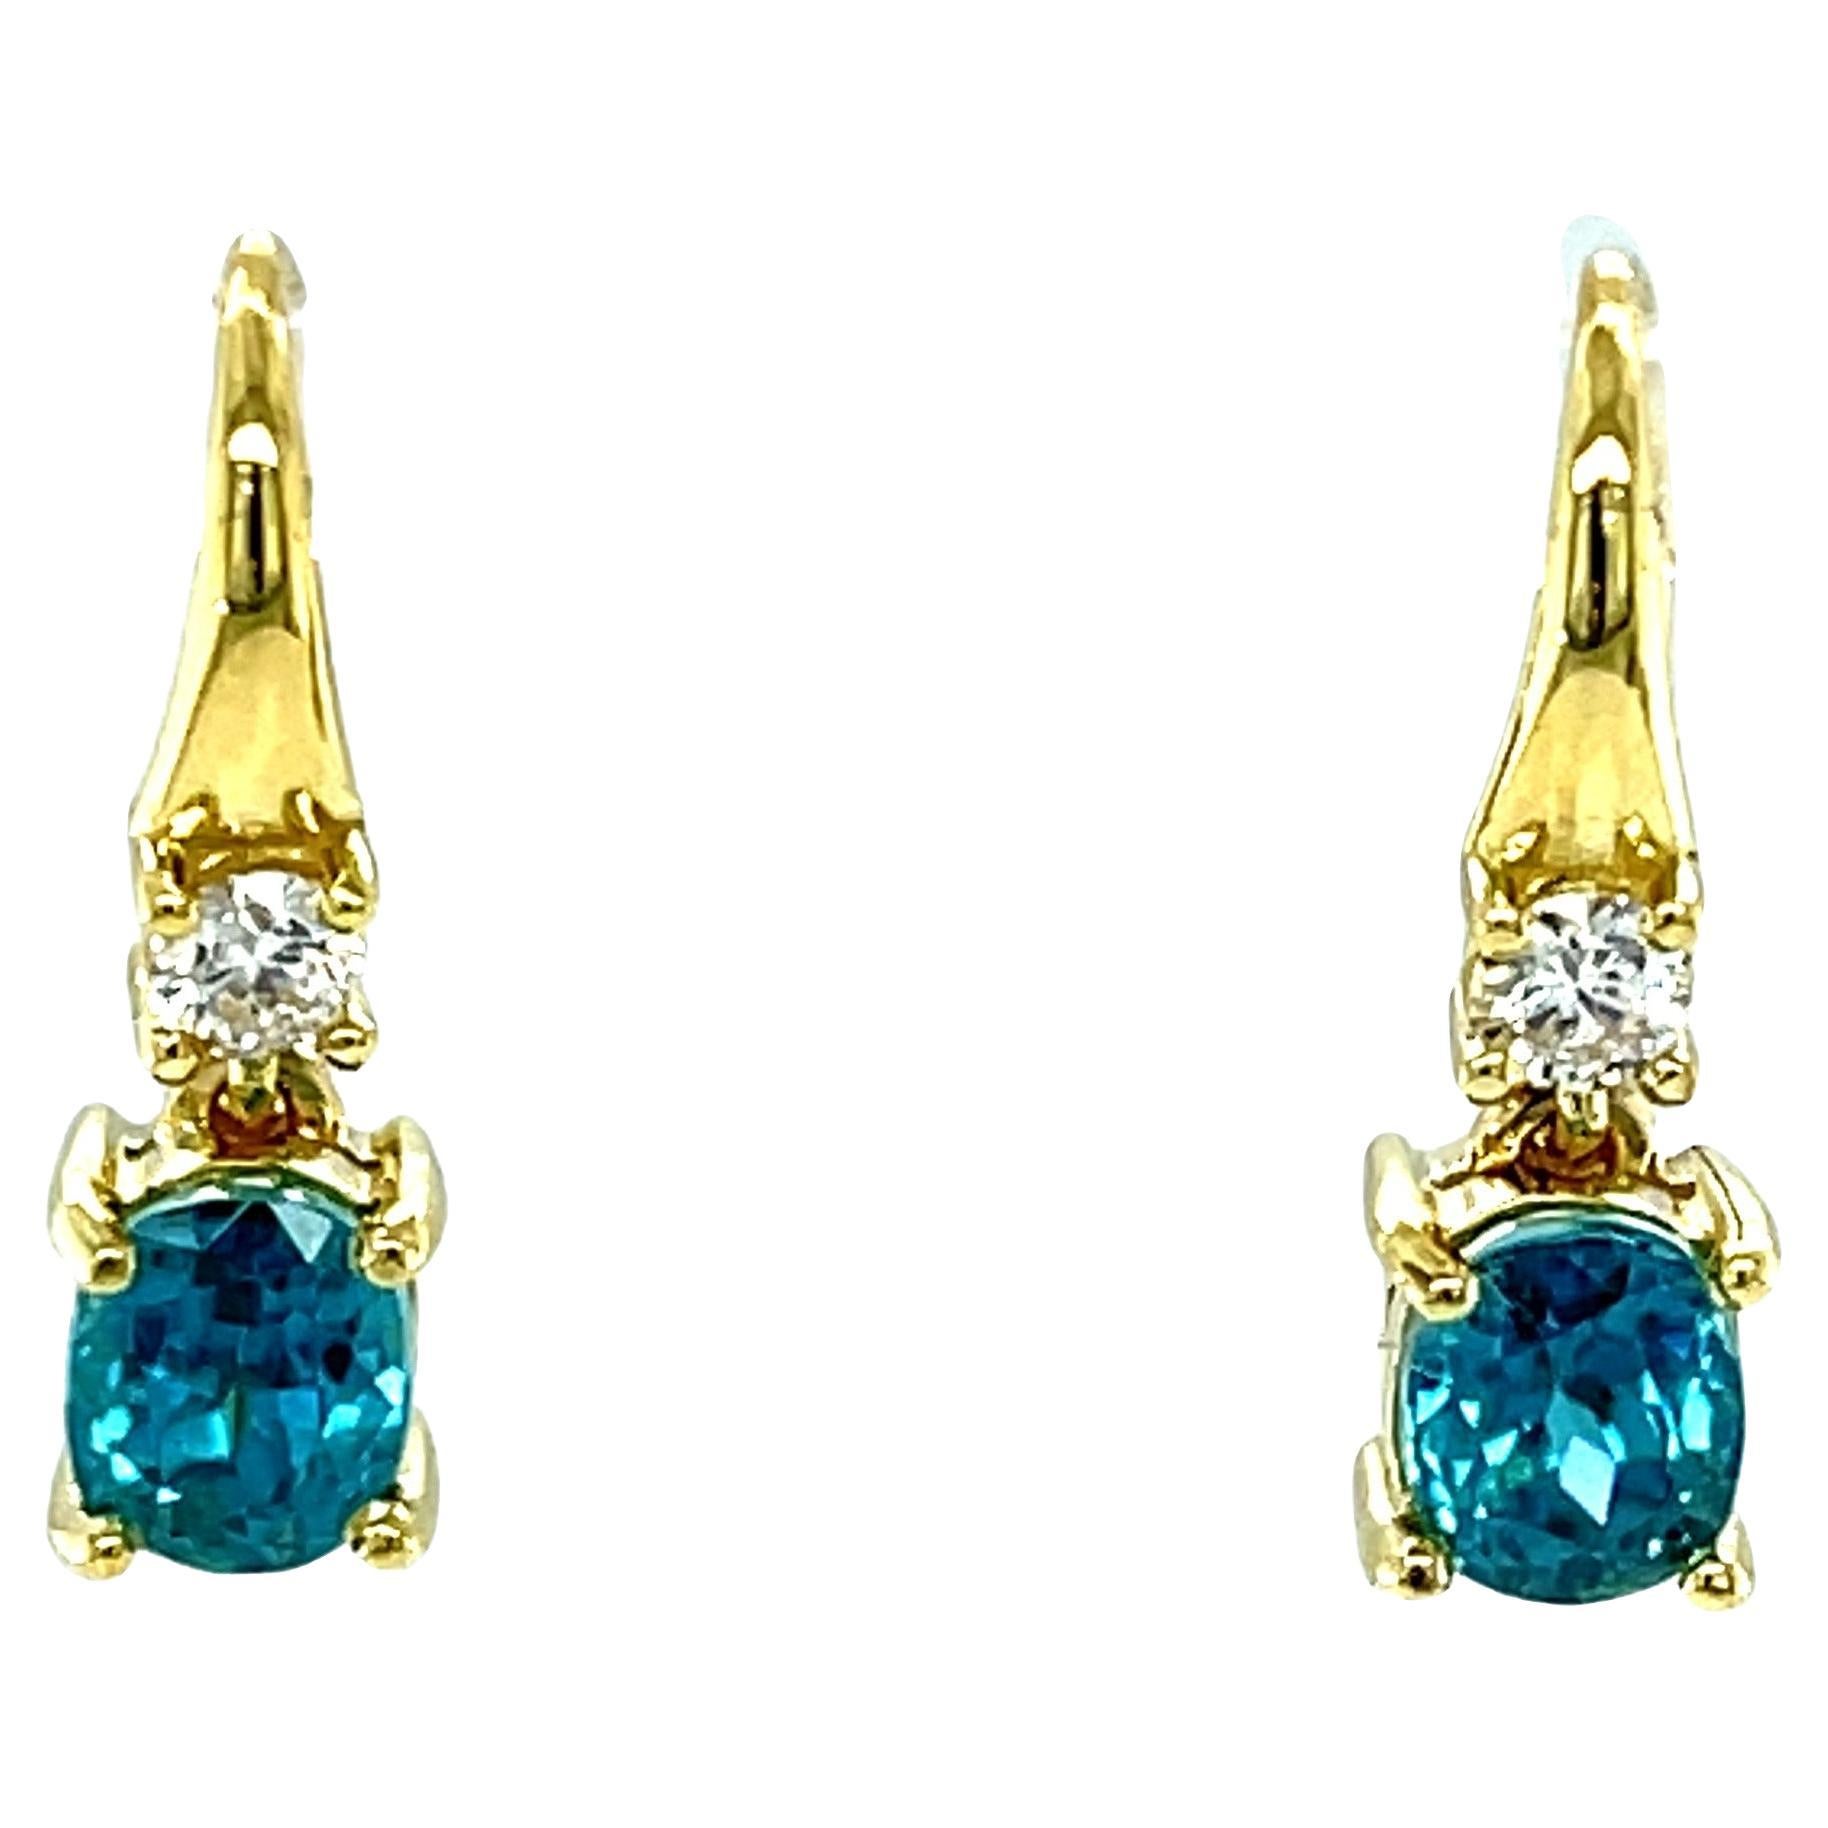 Boucles d'oreilles pendantes en or jaune avec zircon bleu ovale de 2,64 carats et diamant 